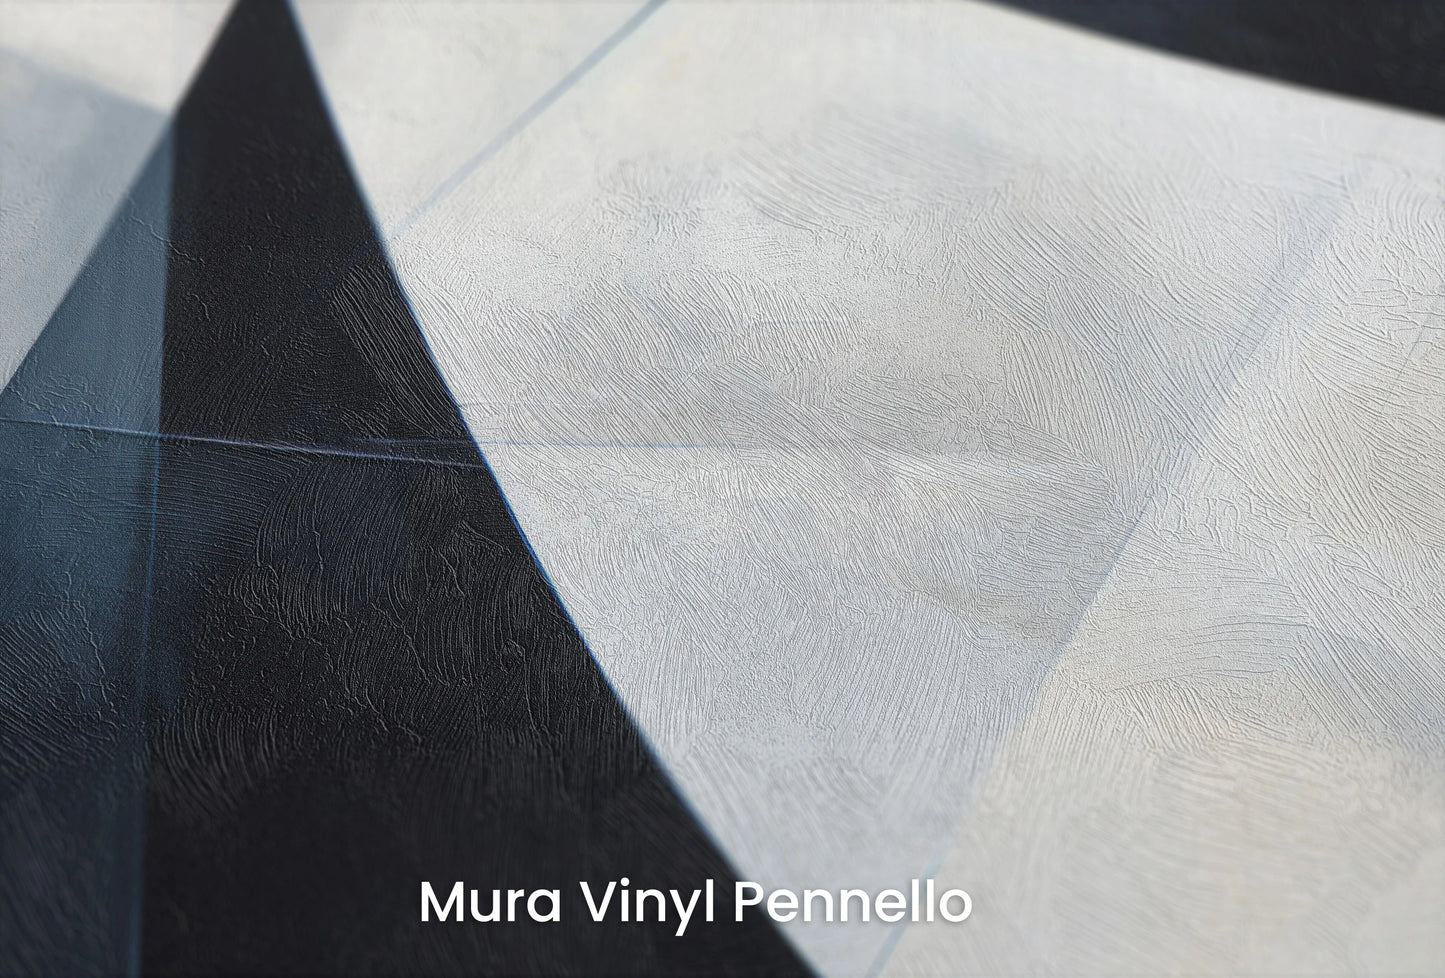 Zbliżenie na artystyczną fototapetę o nazwie Monochrome Slices na podłożu Mura Vinyl Pennello - faktura pociągnięć pędzla malarskiego.